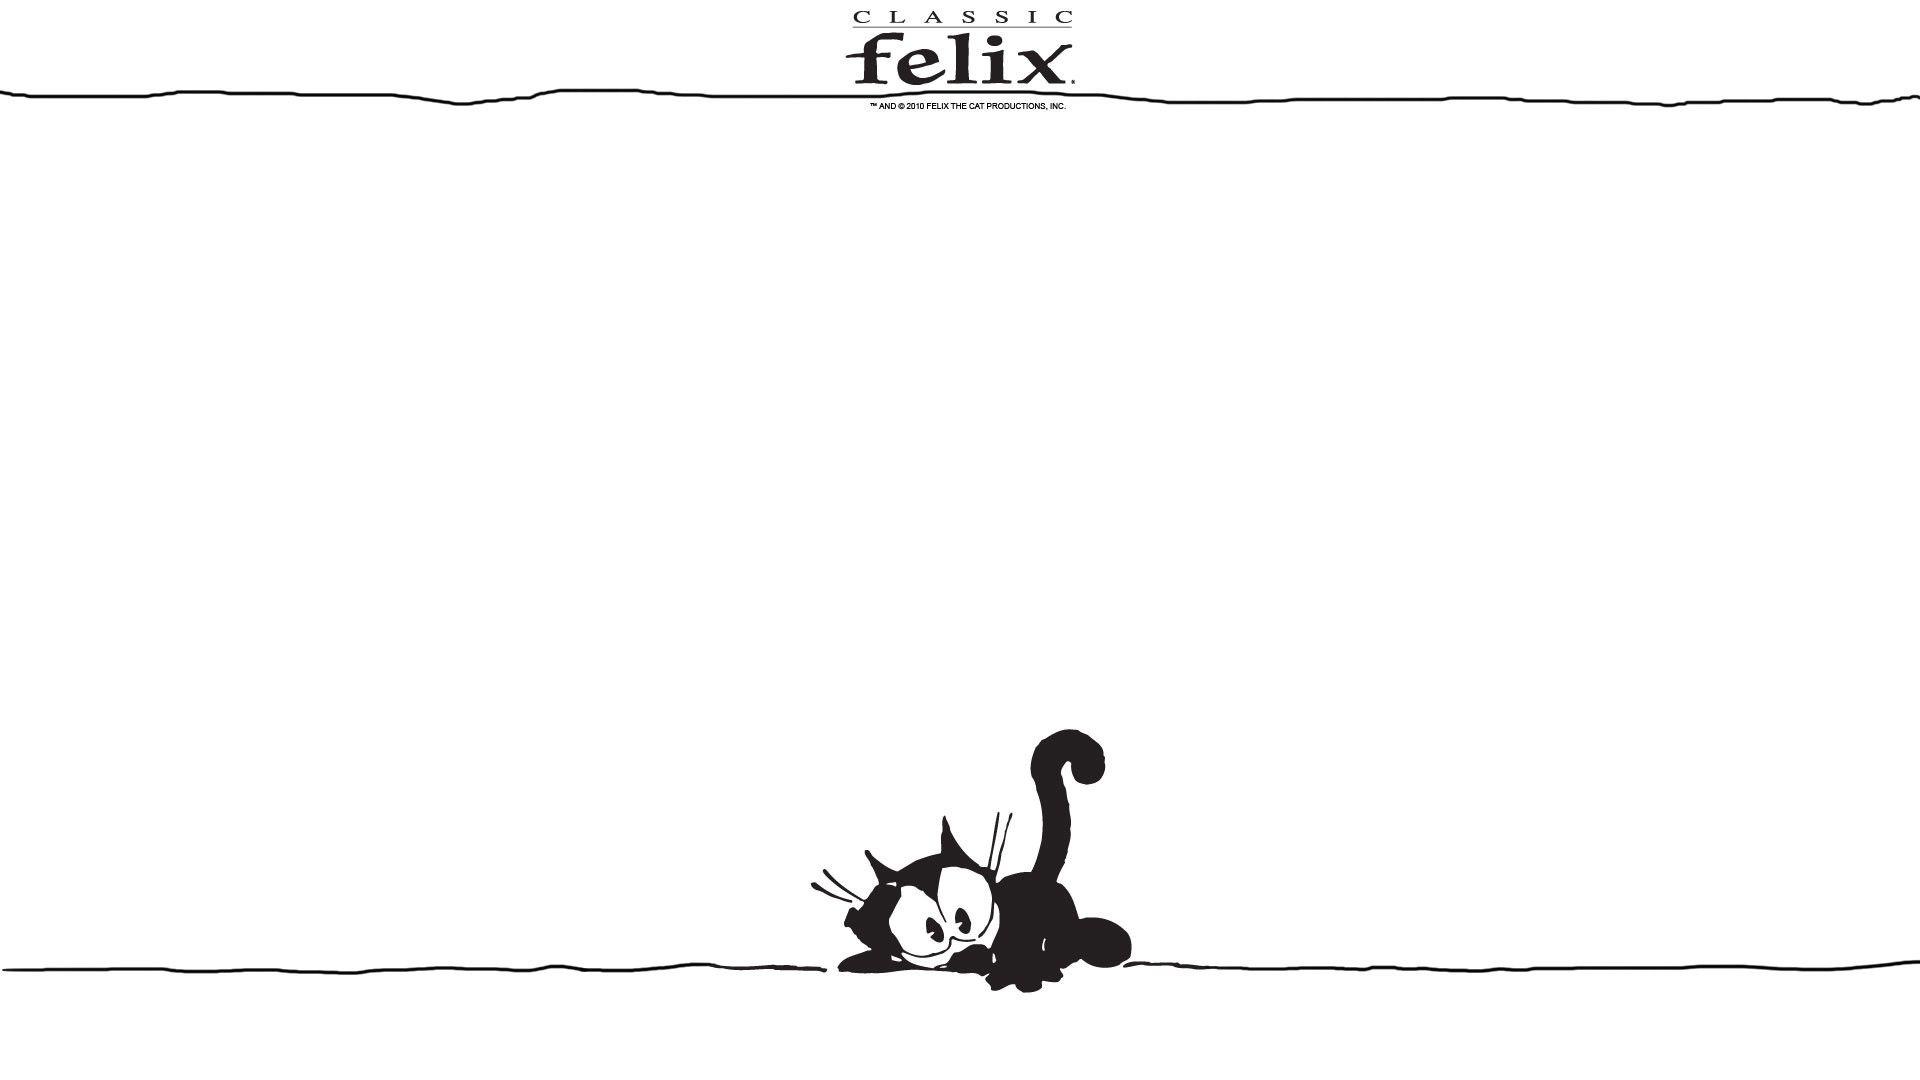 Felix The Cat Desktop Wallpapers - Top Free Felix The Cat Desktop ...